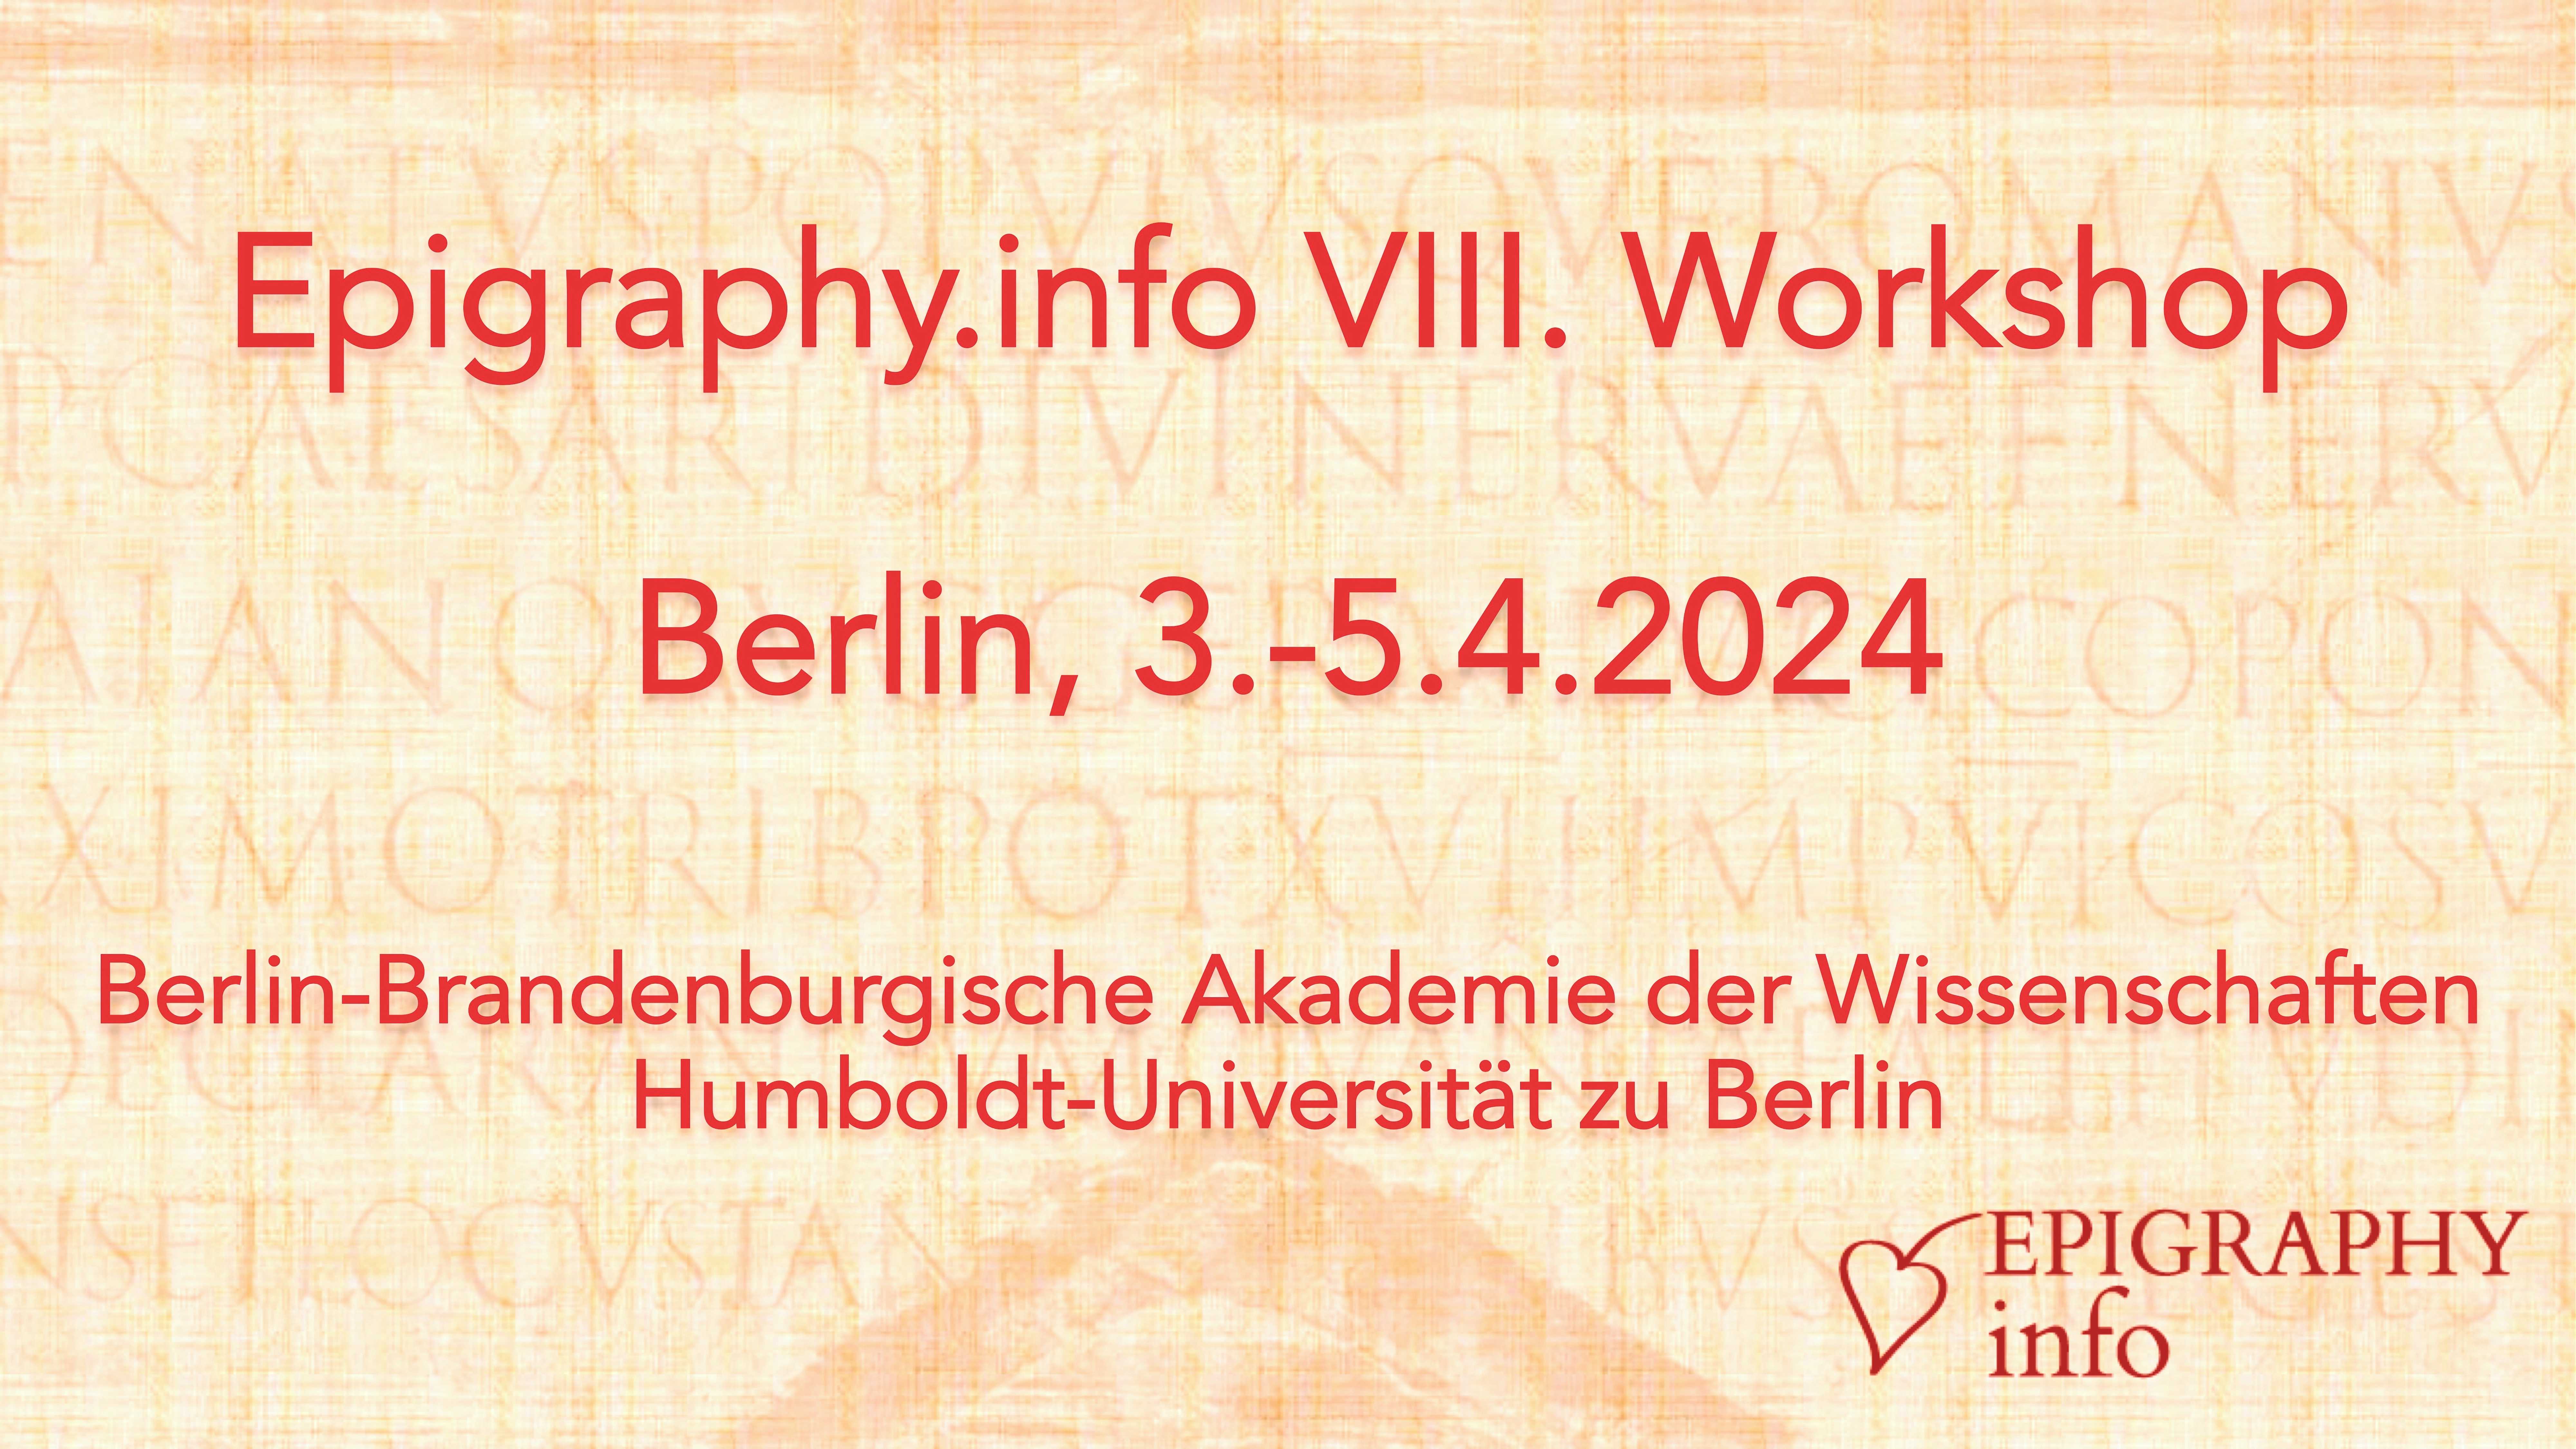 Epigraphy.info VIII workshop in Berlin